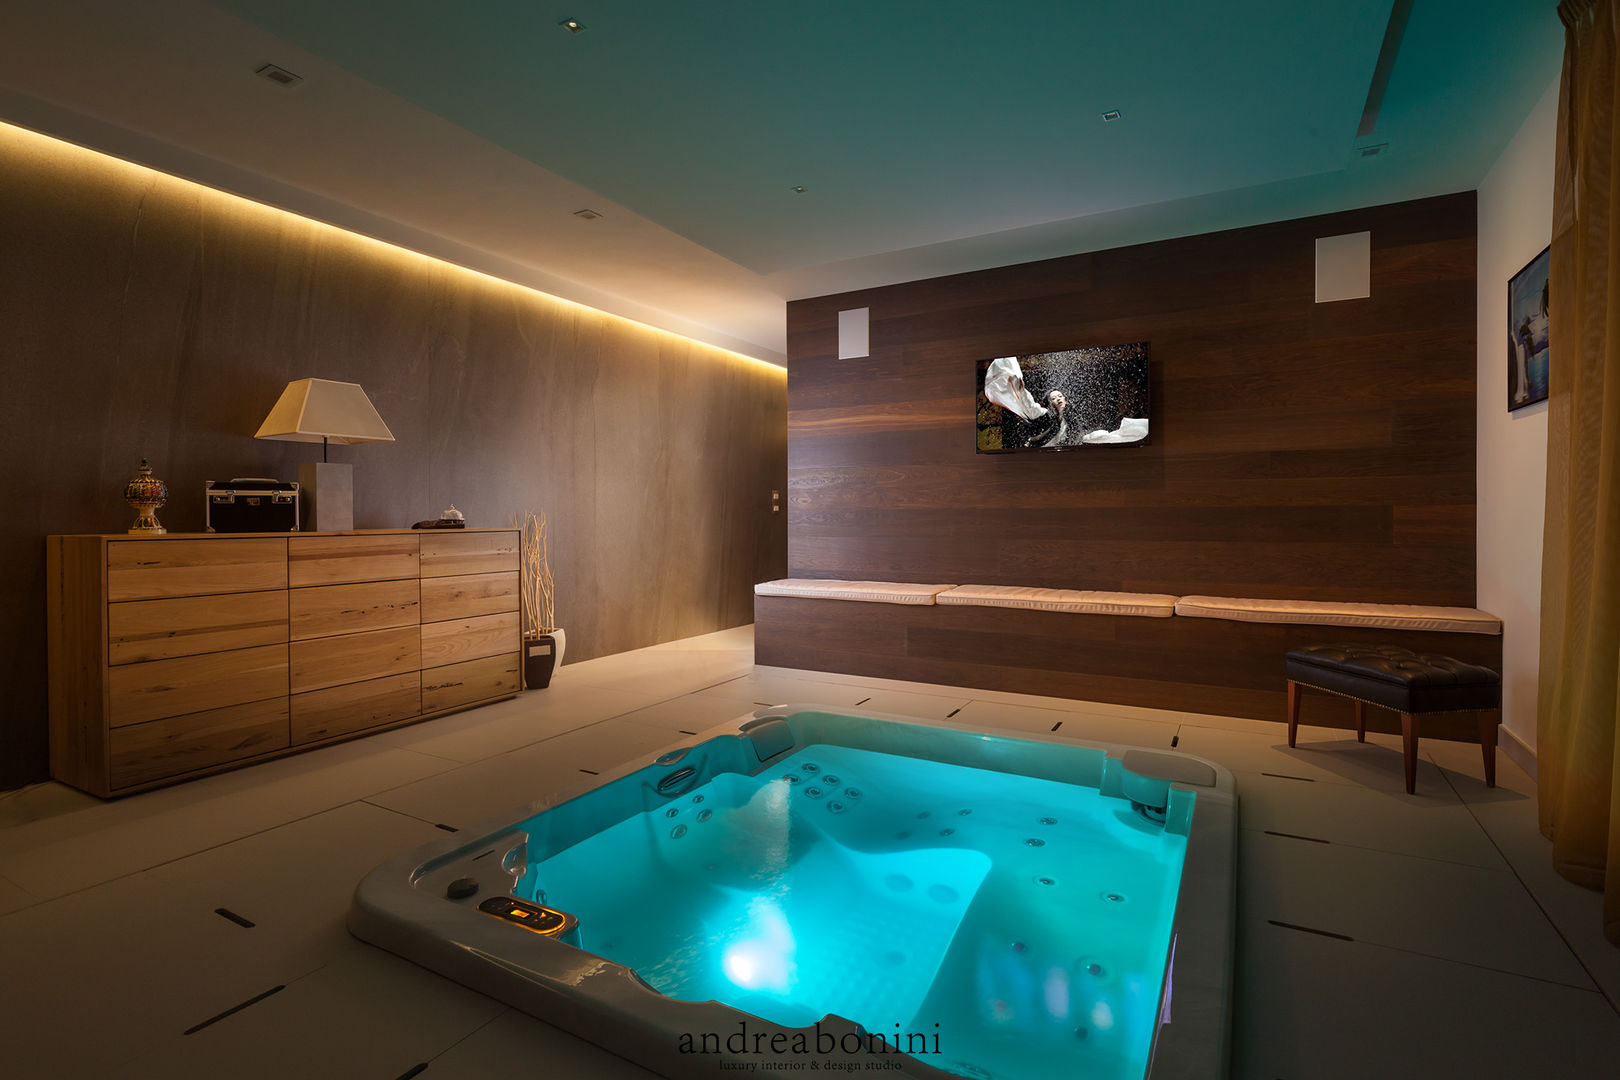 Villa on lake Garda, Andrea Bonini luxury interior & design studio Andrea Bonini luxury interior & design studio Spa